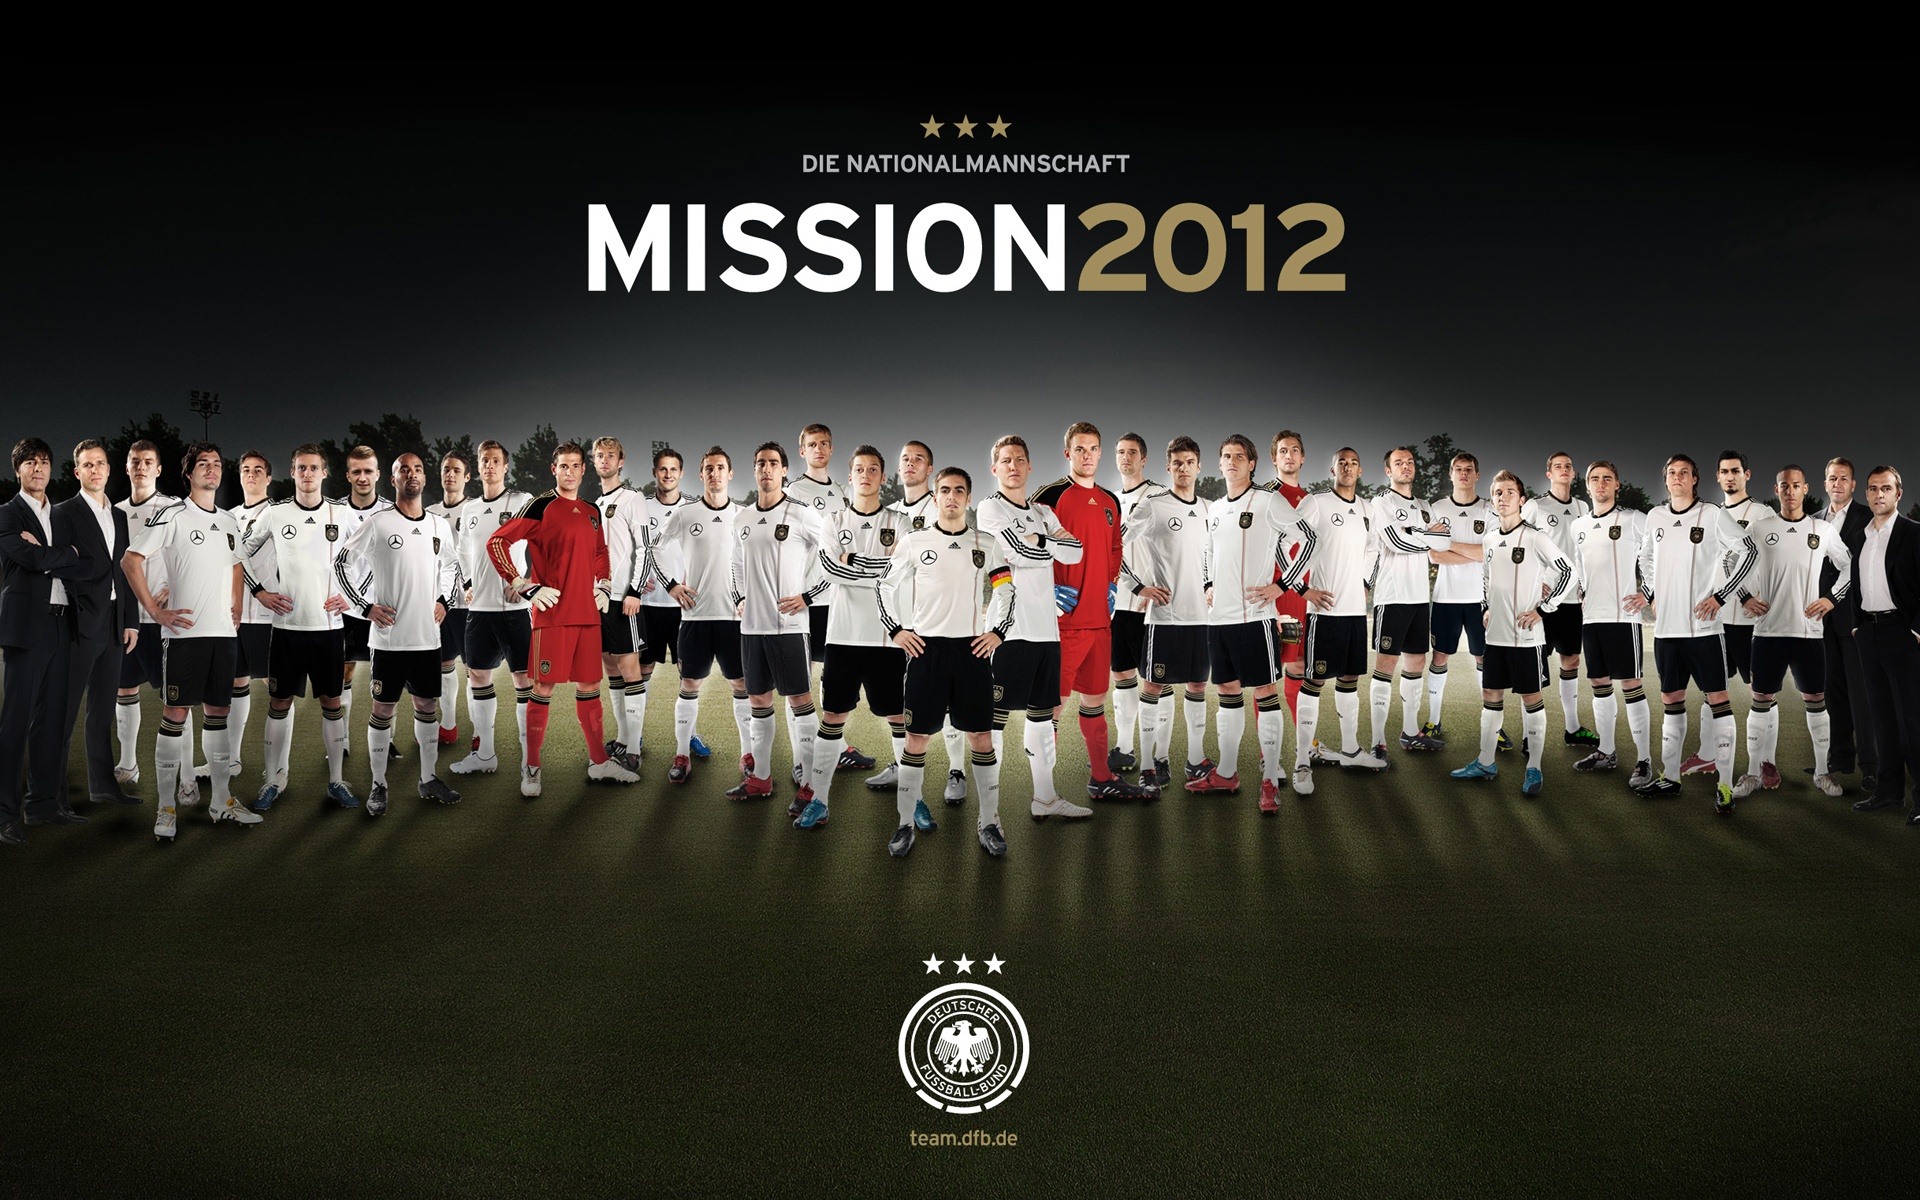 UEFA EURO 2012 欧洲足球锦标赛 高清壁纸(二)5 - 1920x1200